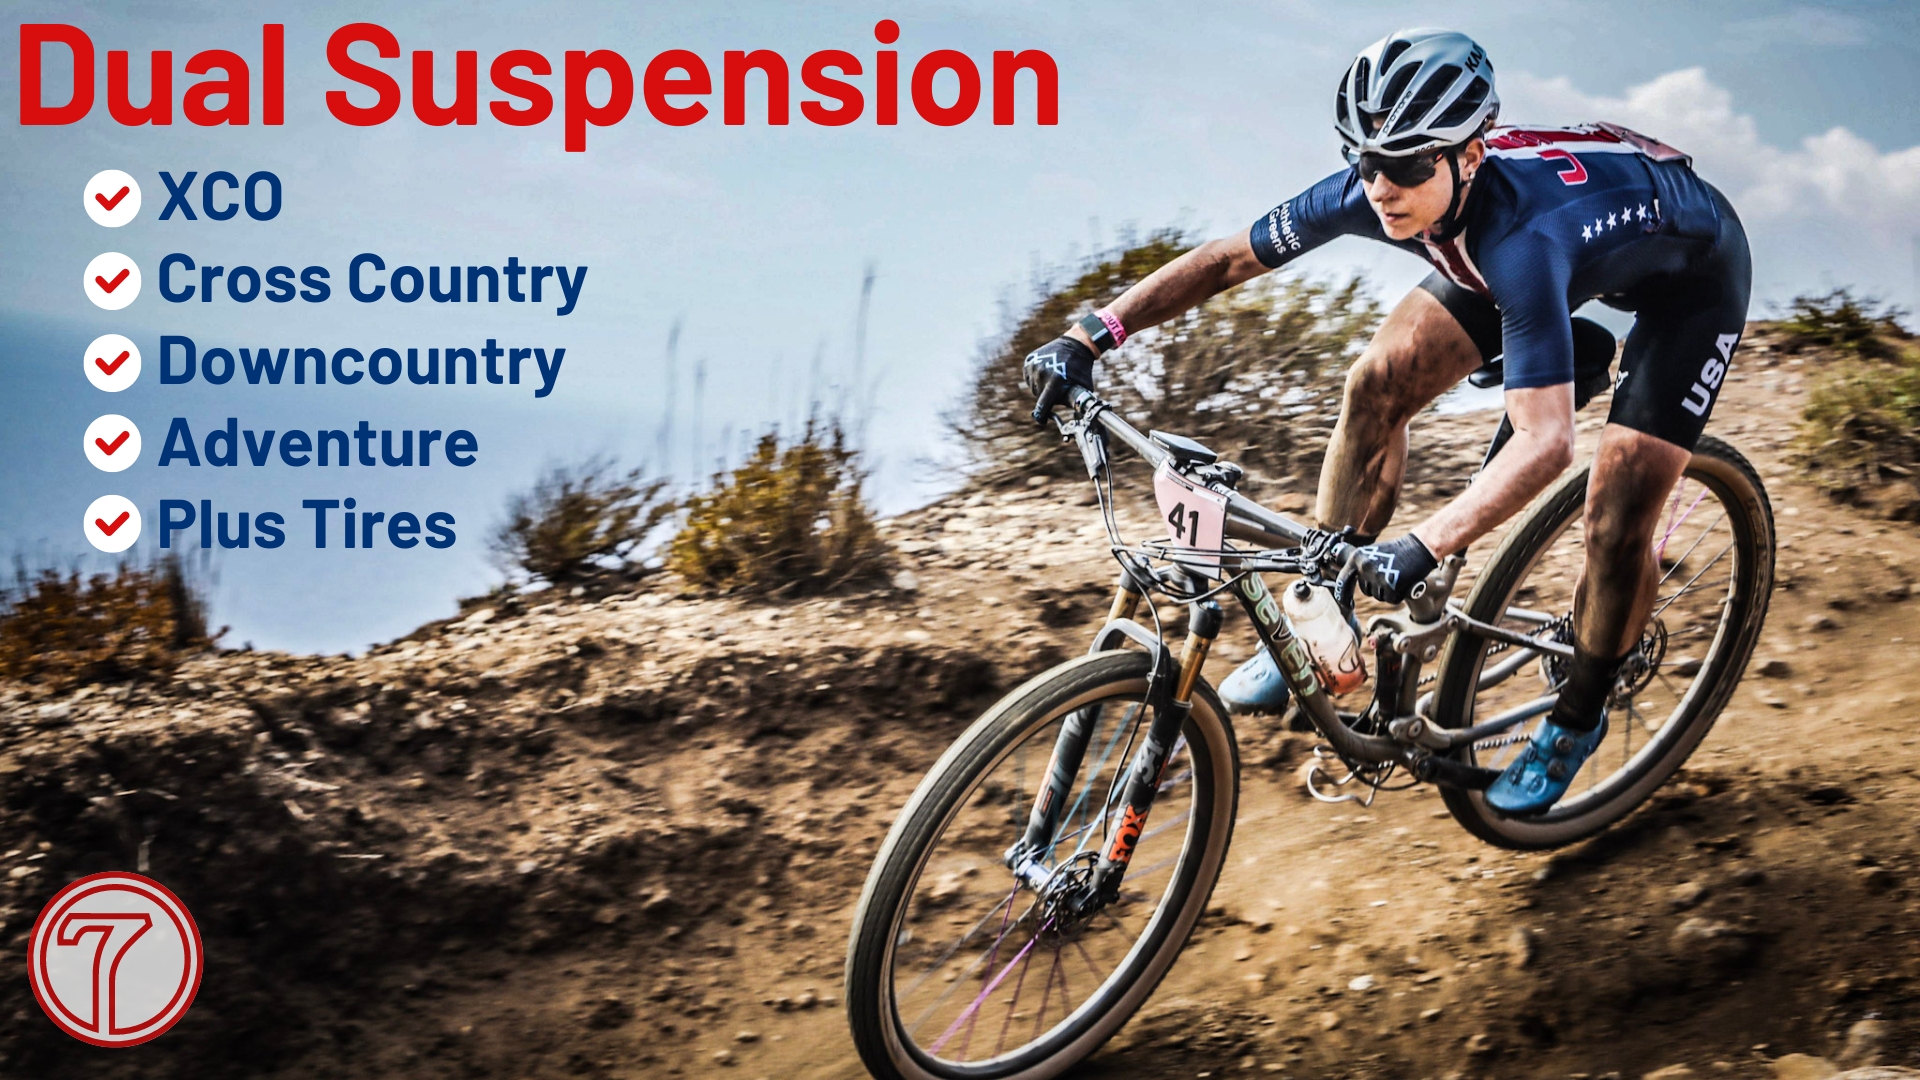 Suspension bikes